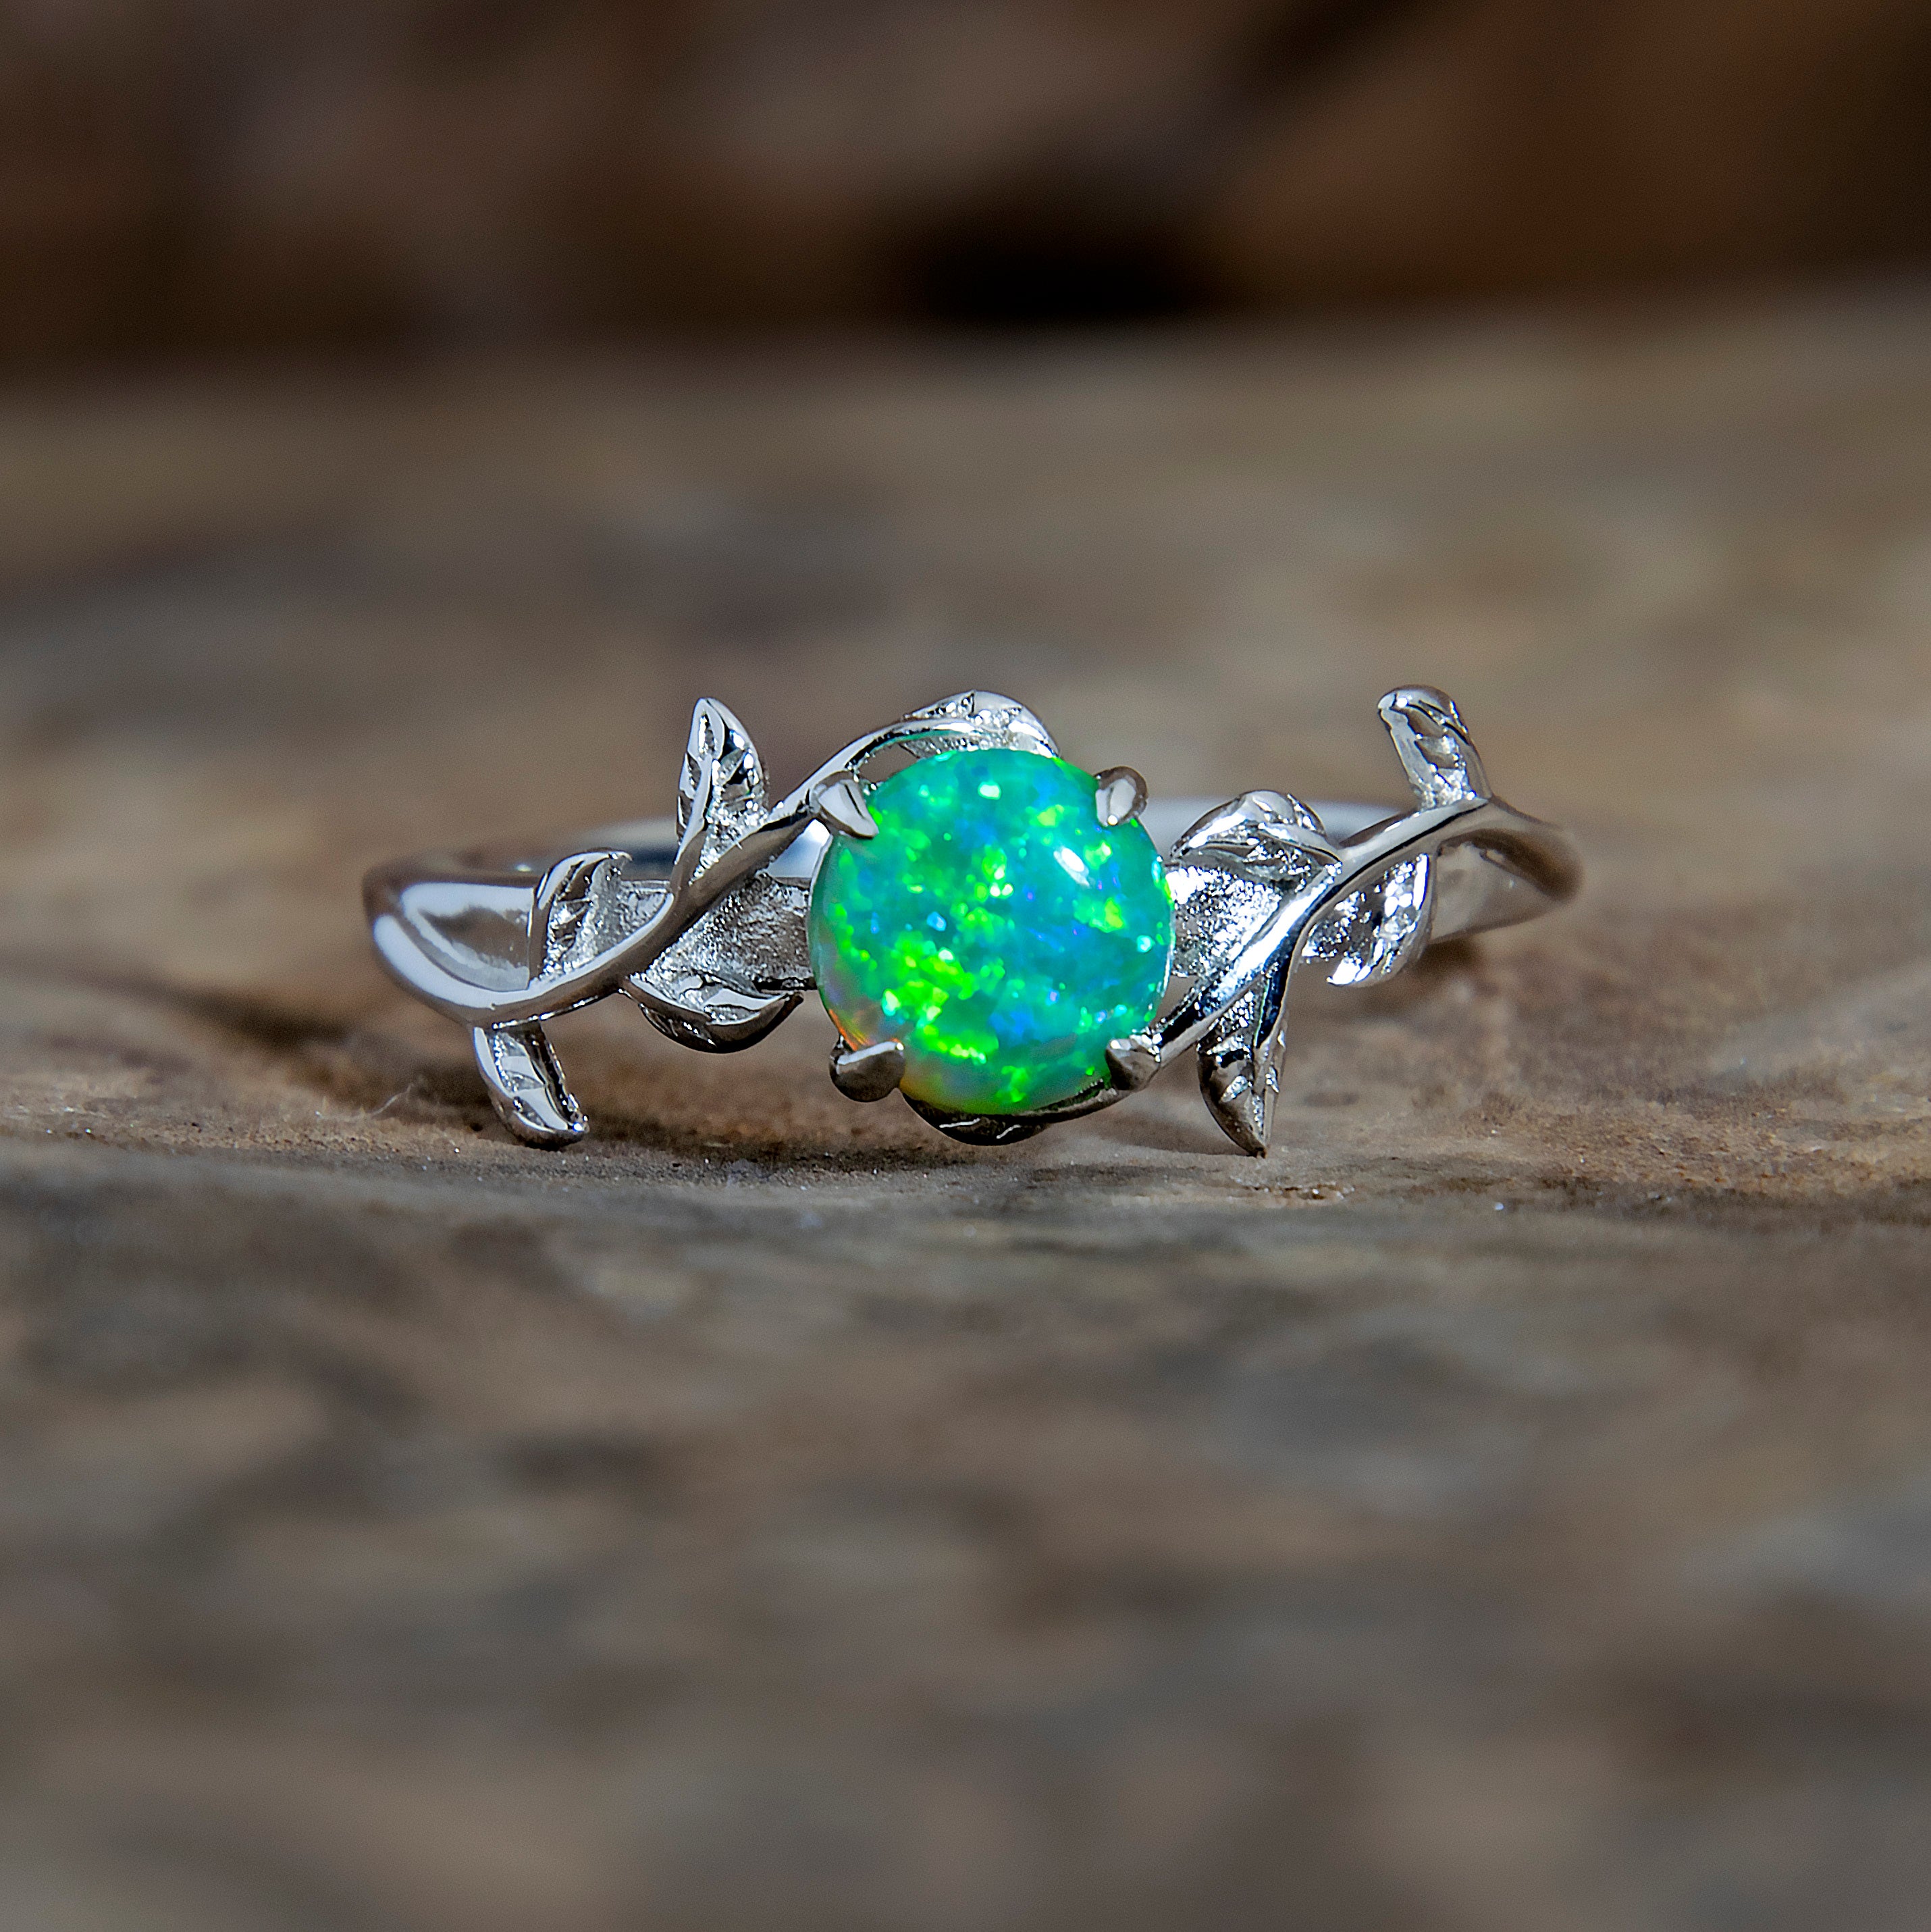 Silver Leaf Branch Kiwi Green Opal Ring Copperbeard Jewelry